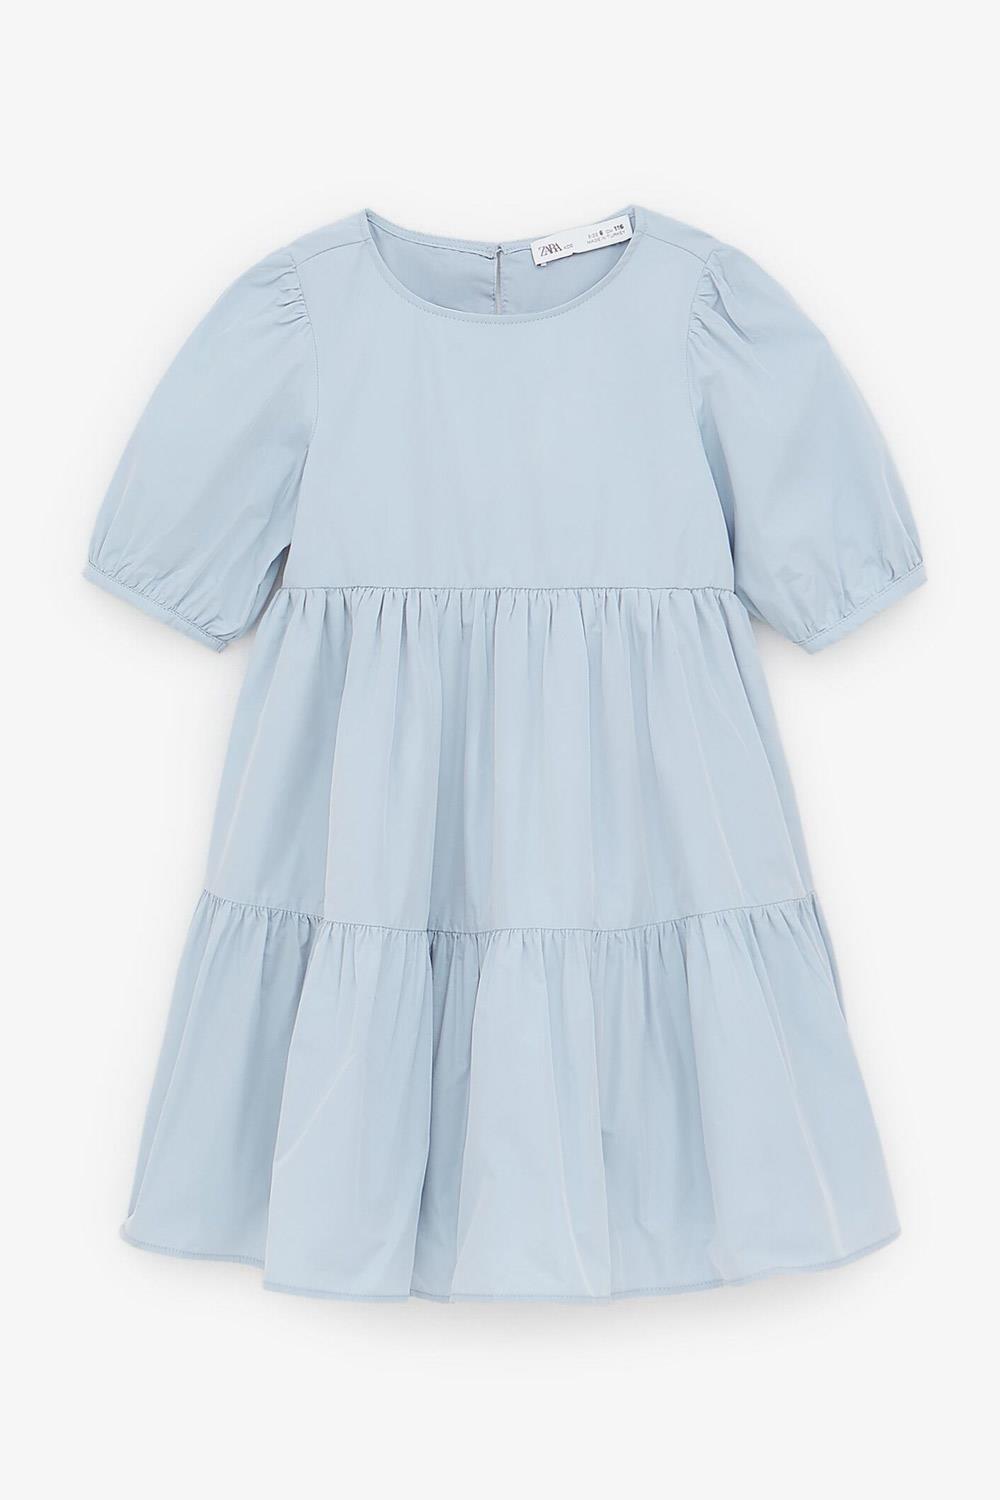 ropa zara kids para bajitas vestido Zara Kids, 22,95€